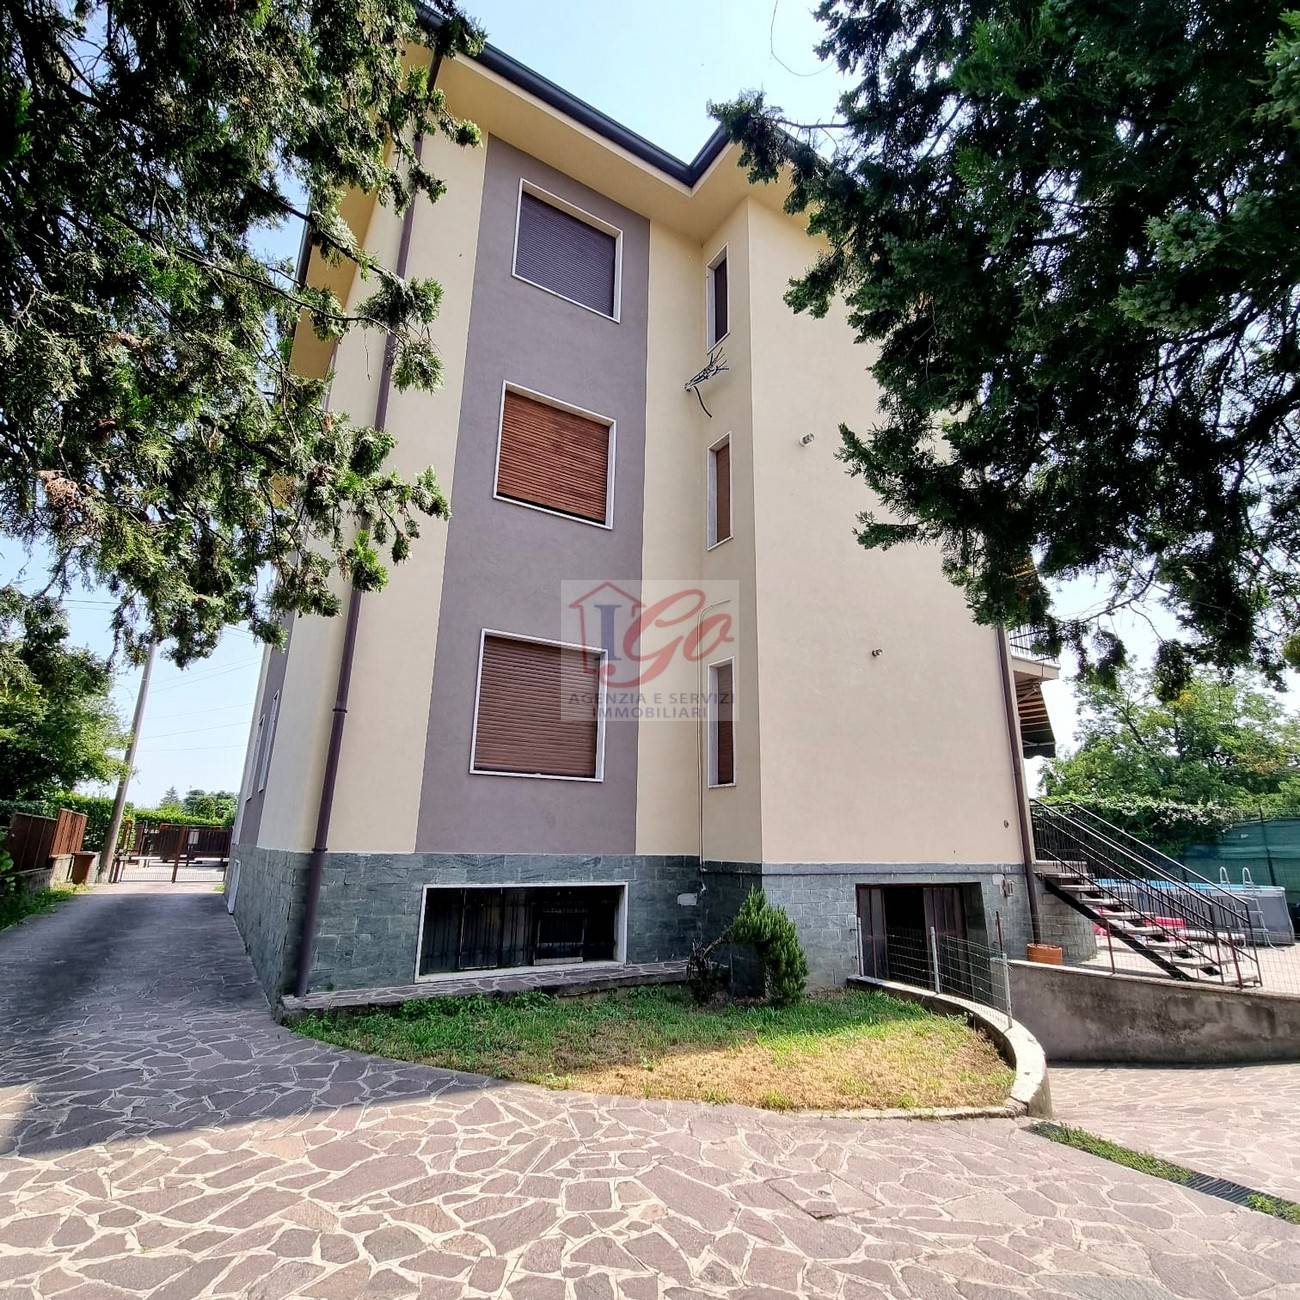 Appartamento in vendita a Brembate, 4 locali, prezzo € 154.000 | PortaleAgenzieImmobiliari.it